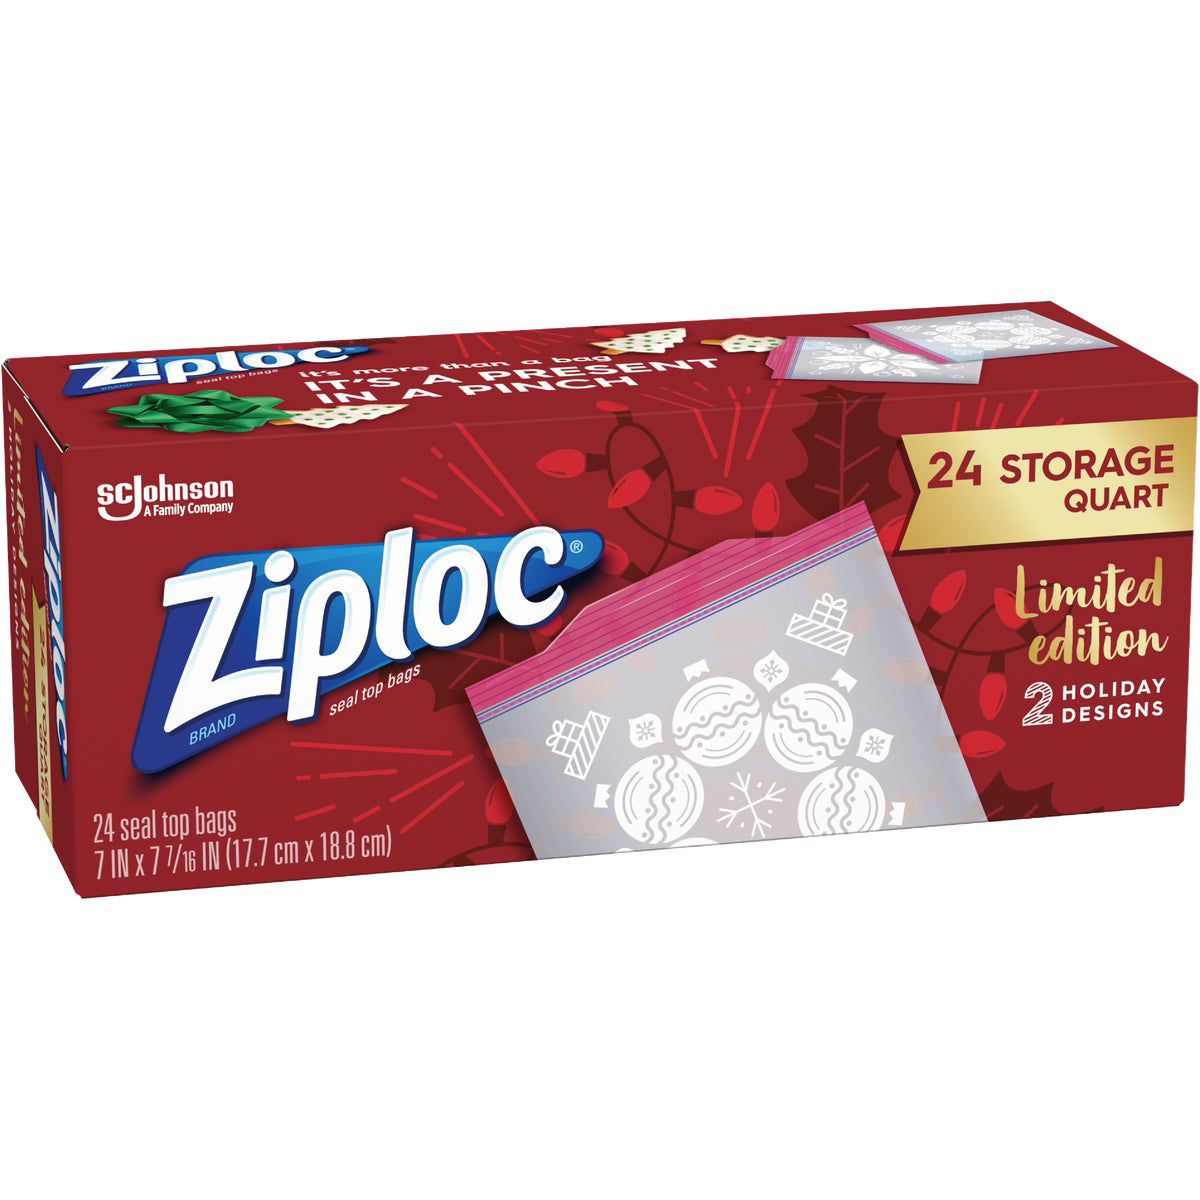 Ziploc Brand Holiday Storage Quart Bags, 24 CT